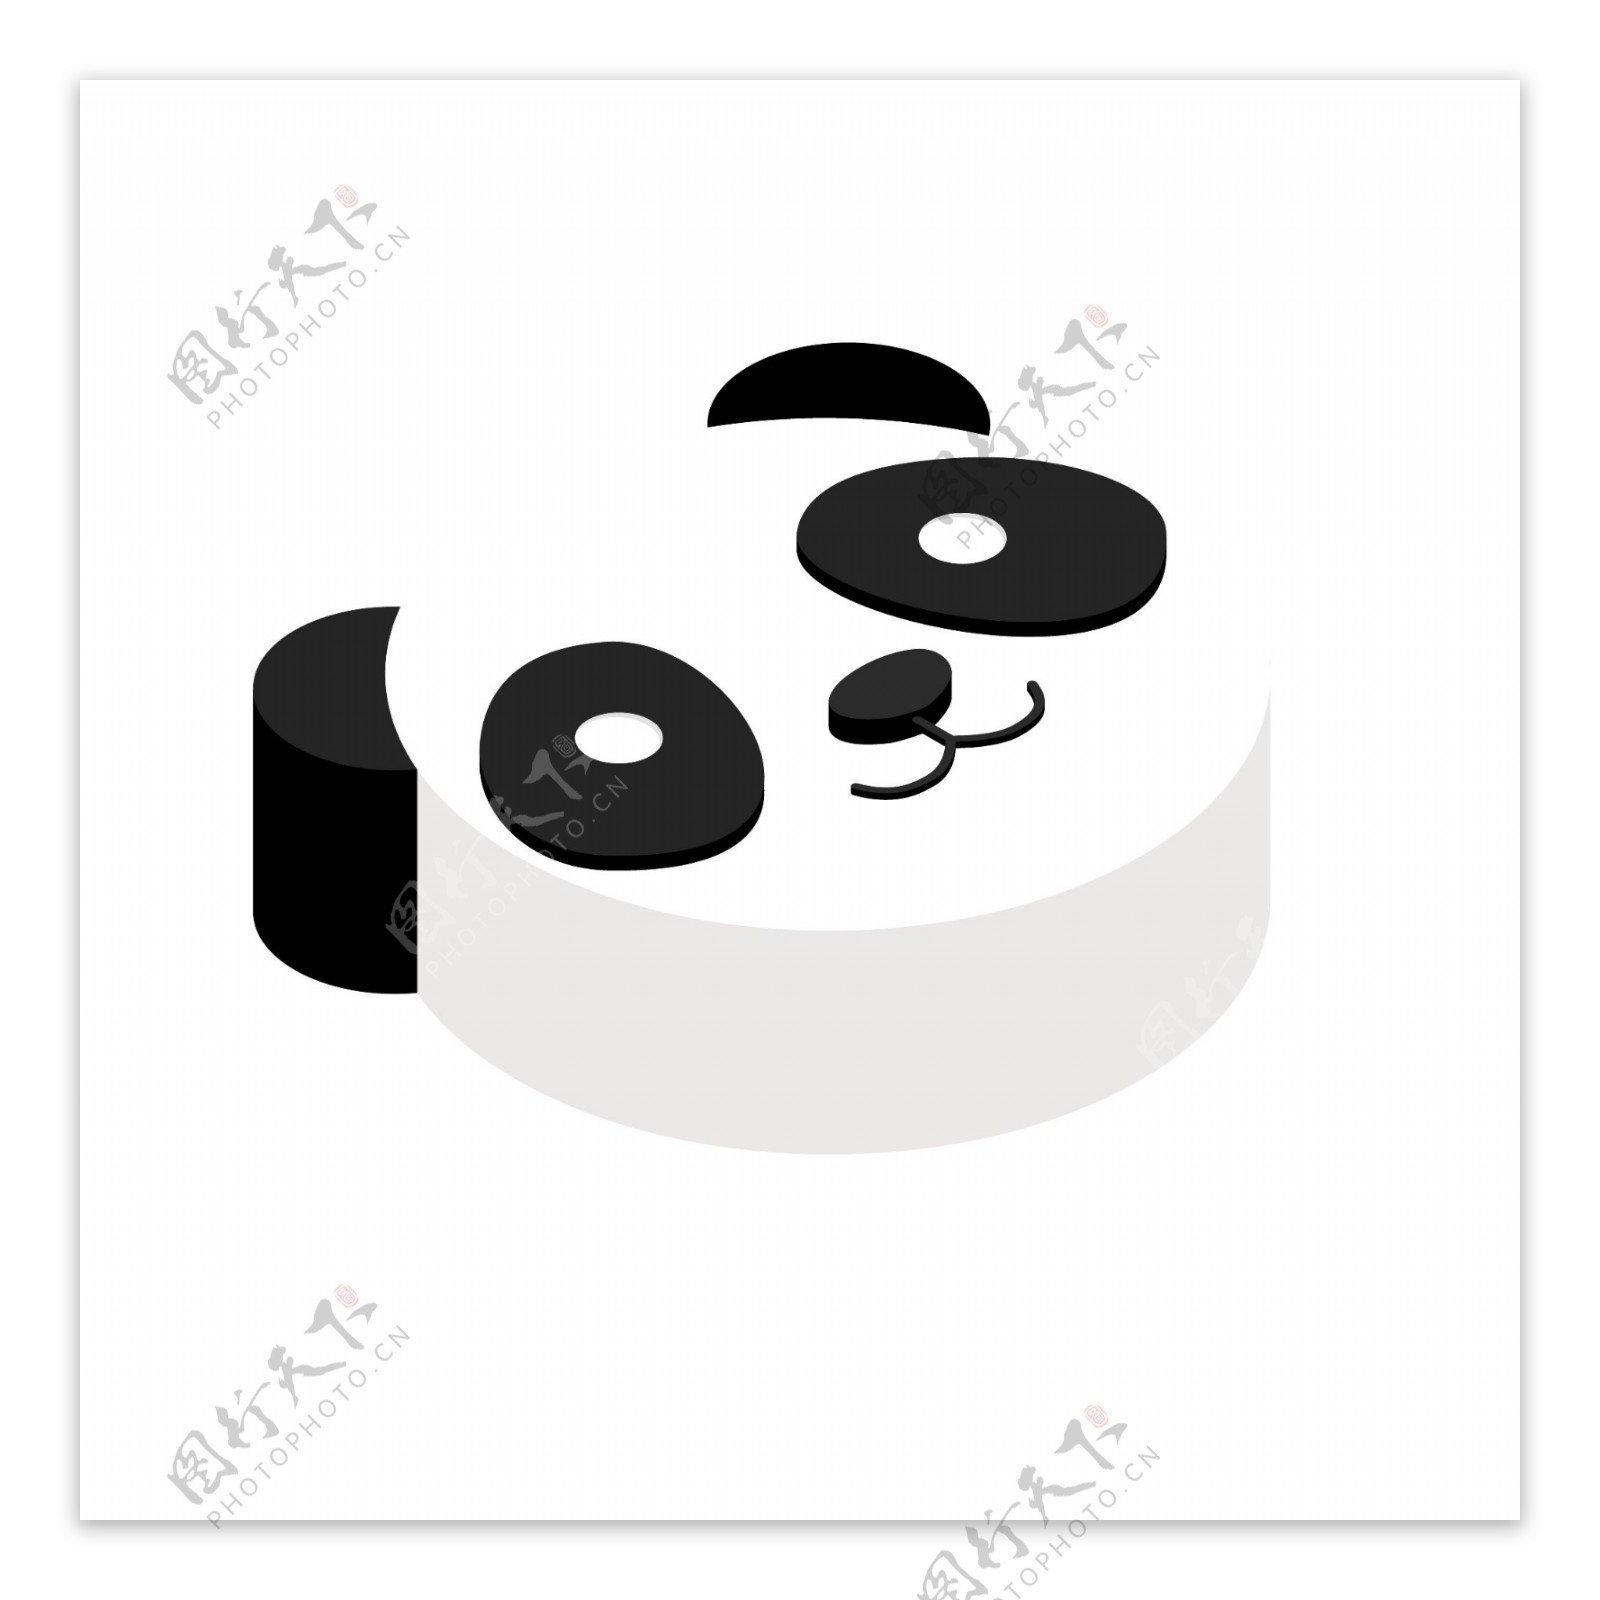 2.5D可爱熊猫头像立体图标可商用元素